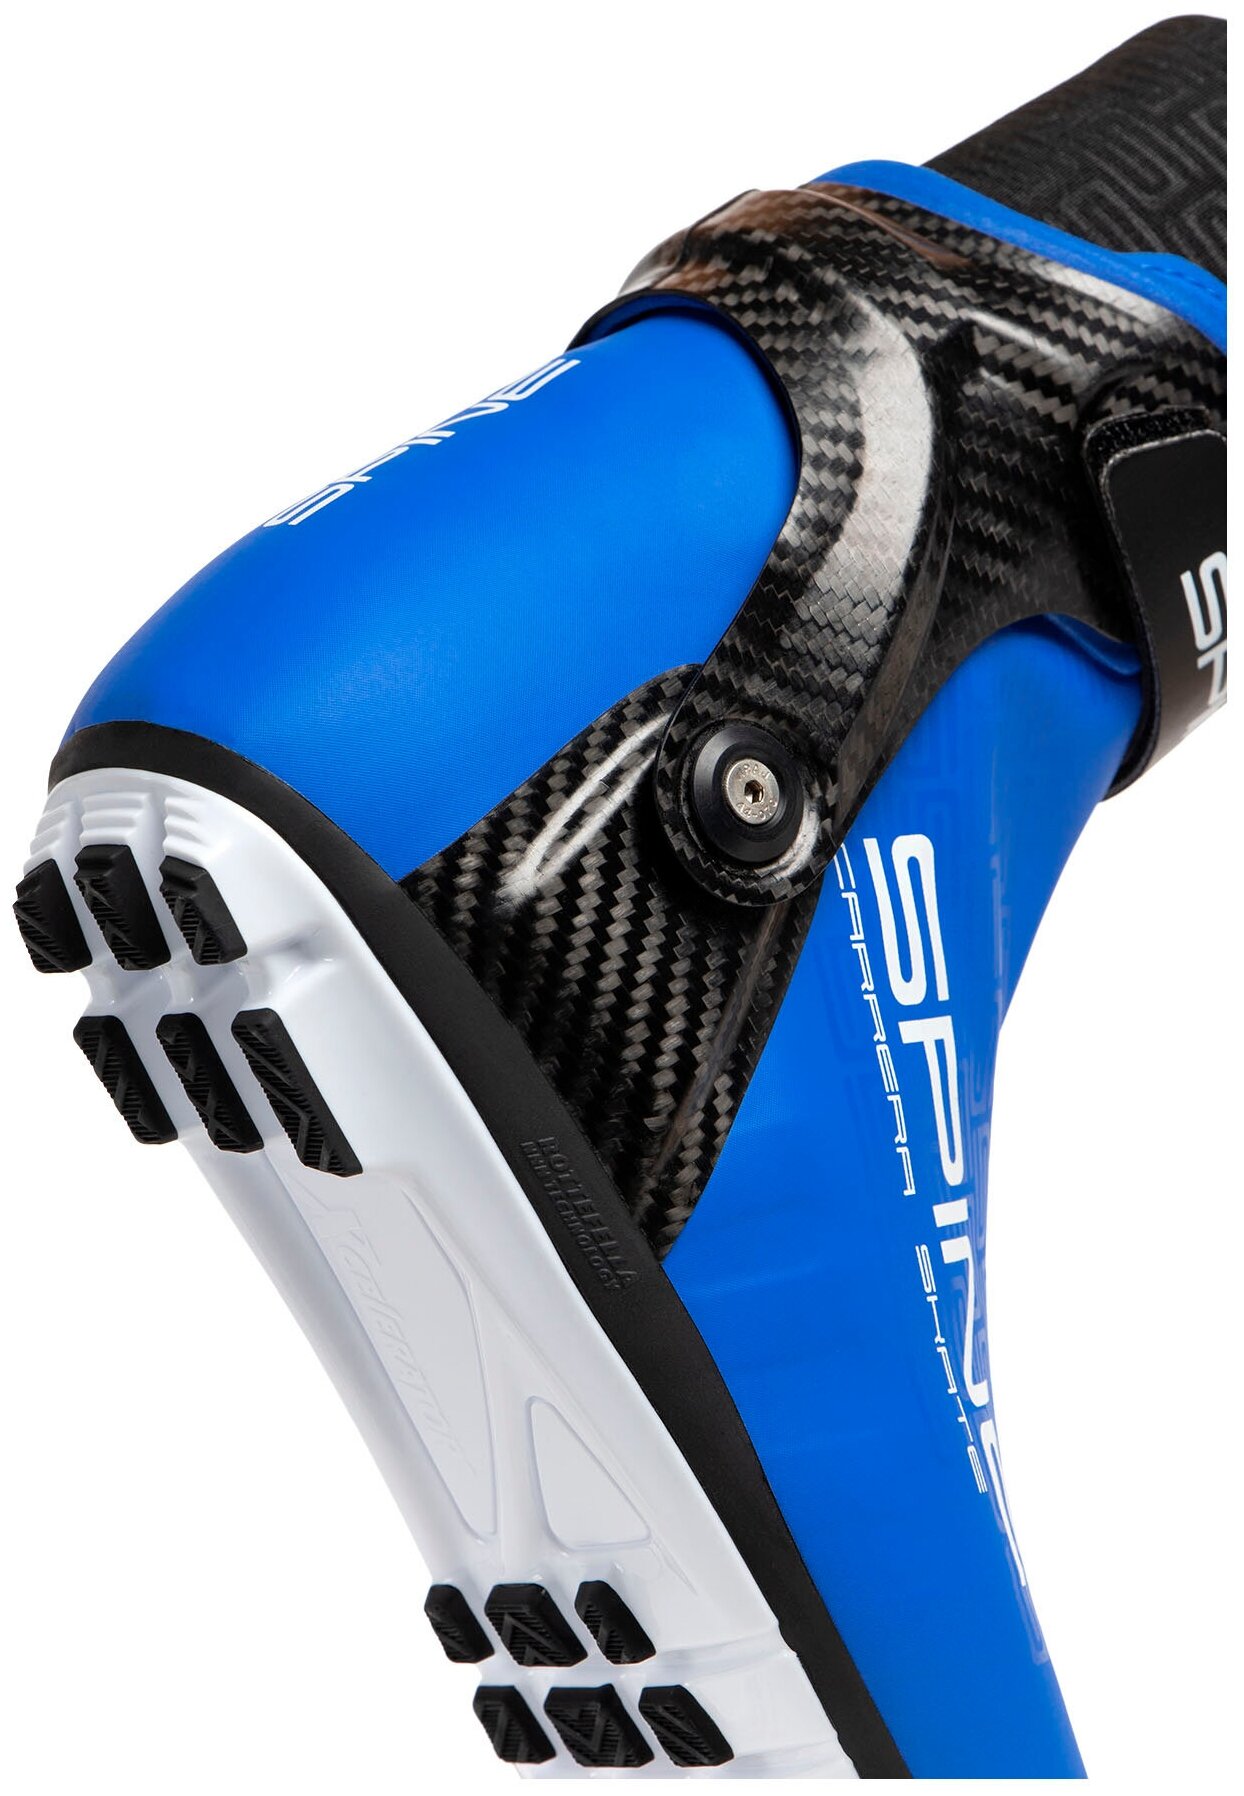 Ботинки для беговых лыж Spine Concept Skate PRO, Синий, размер 37.5 - фото №4